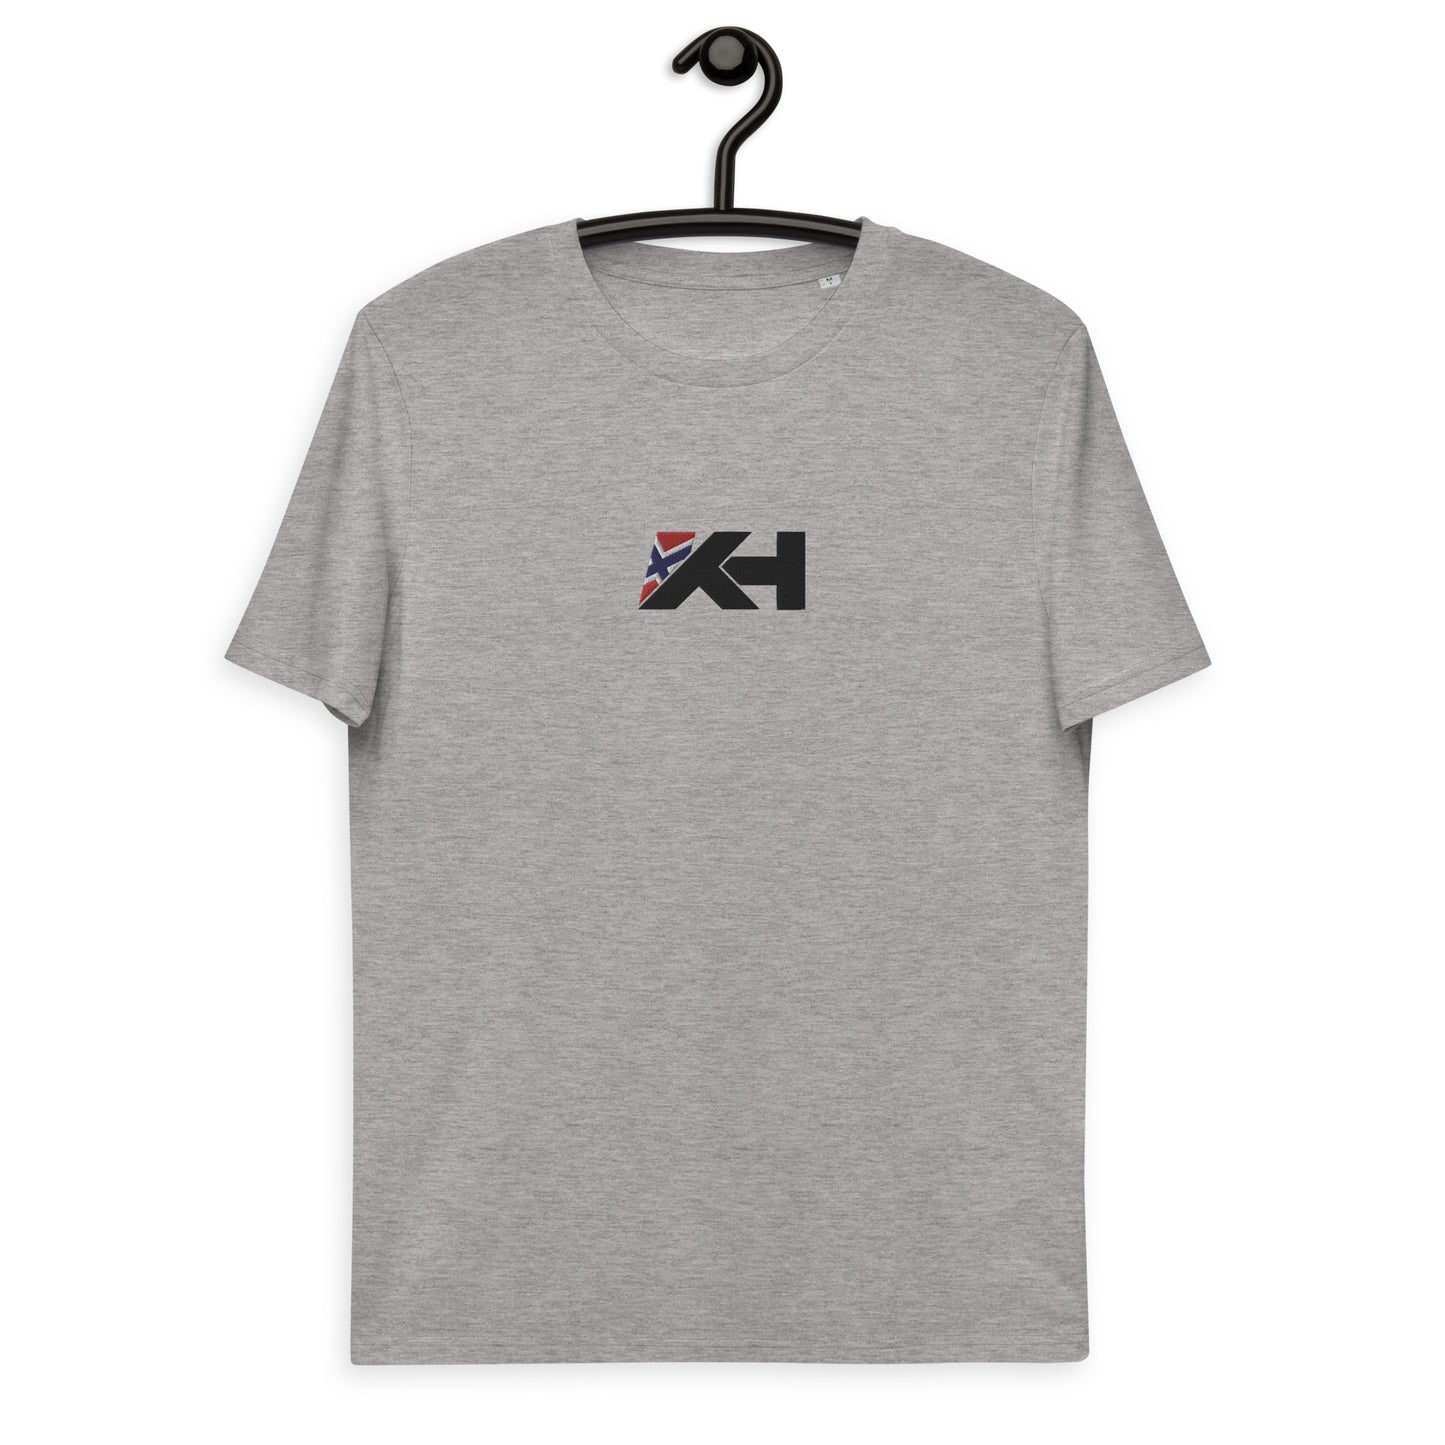 Unisex KH Supporter T-shirt